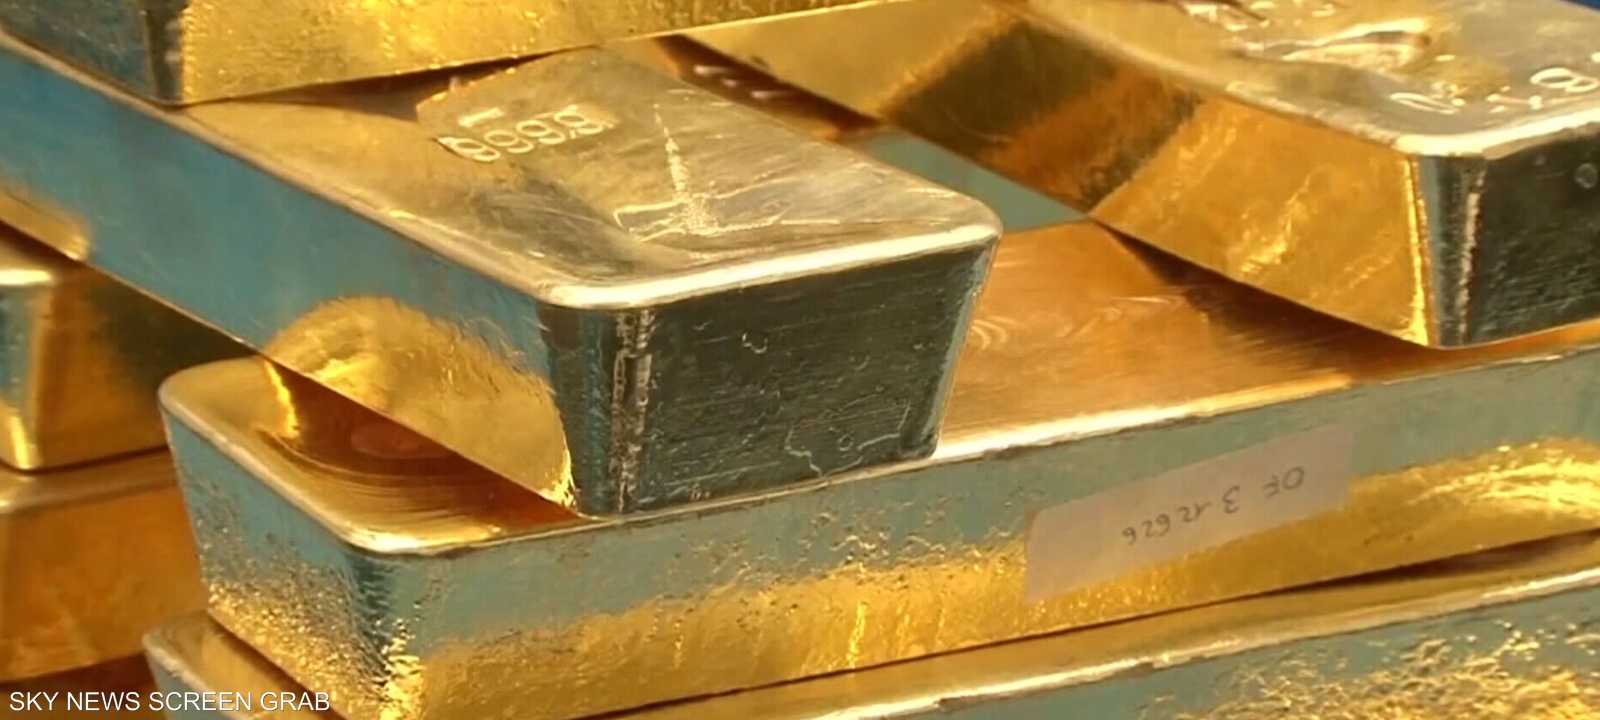 تعتبر البنوك الذهب ملاذا آمنا أكثر من بقية الأصول الأخرى